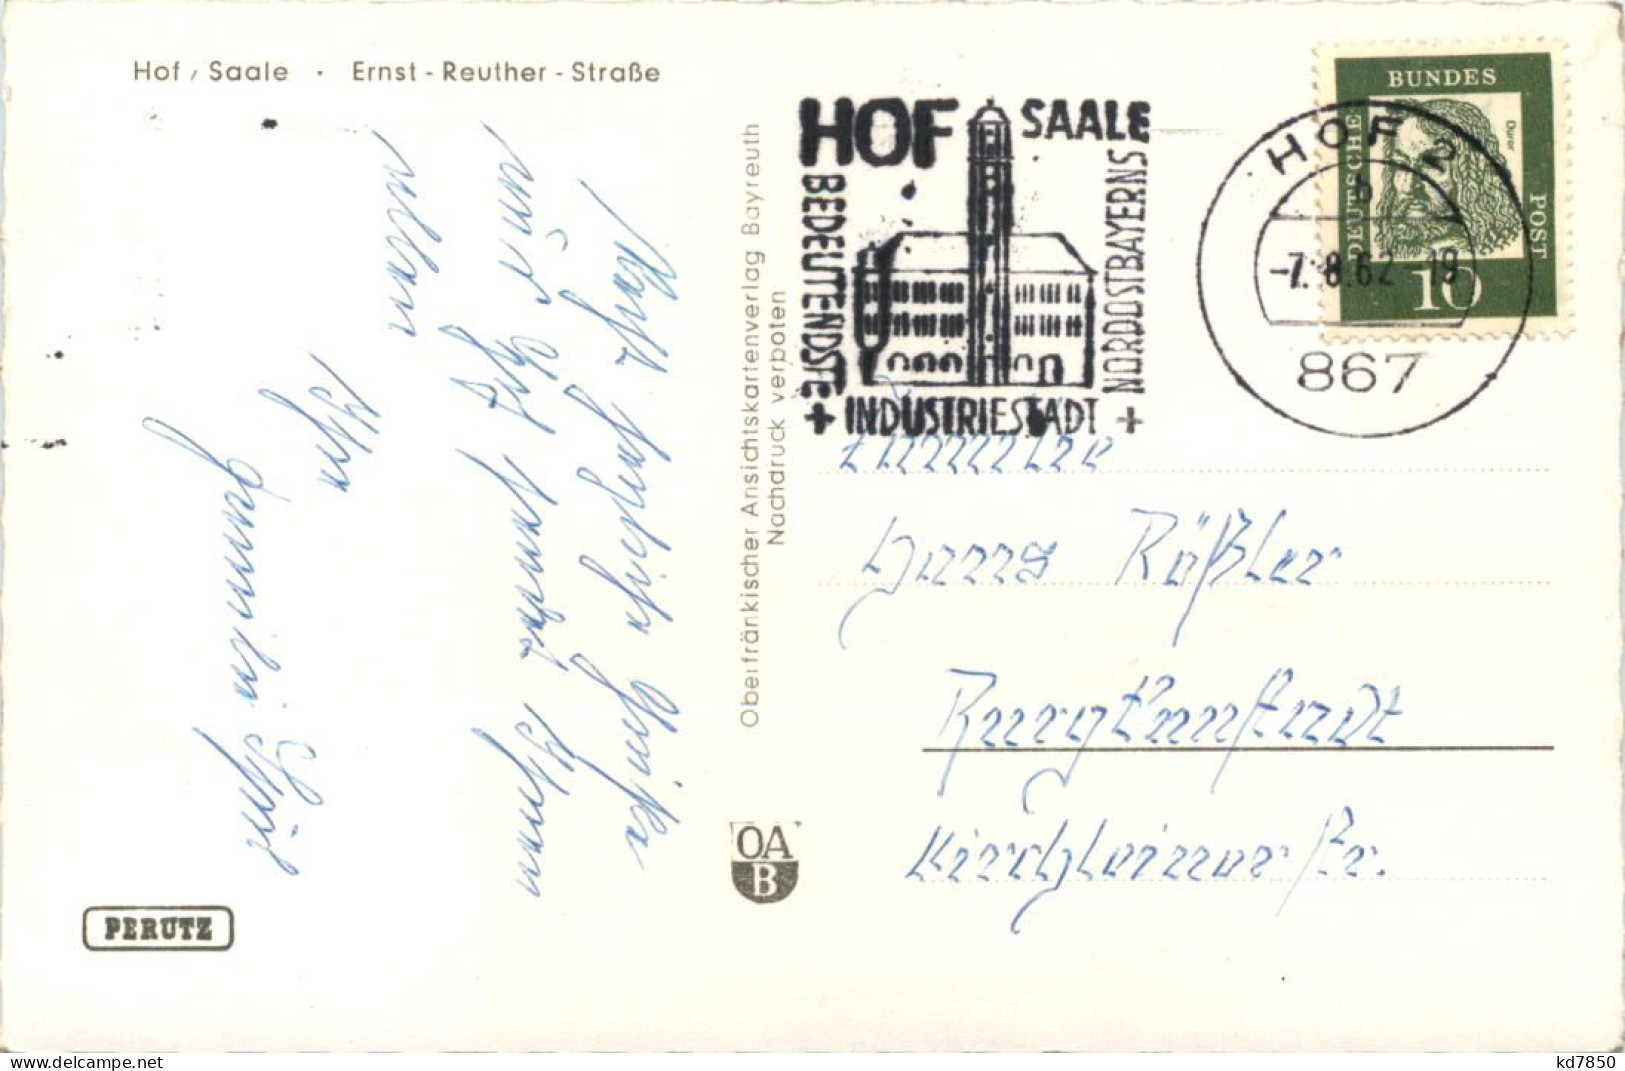 Hof/saale, Ernst Reuther Strasse - Hof